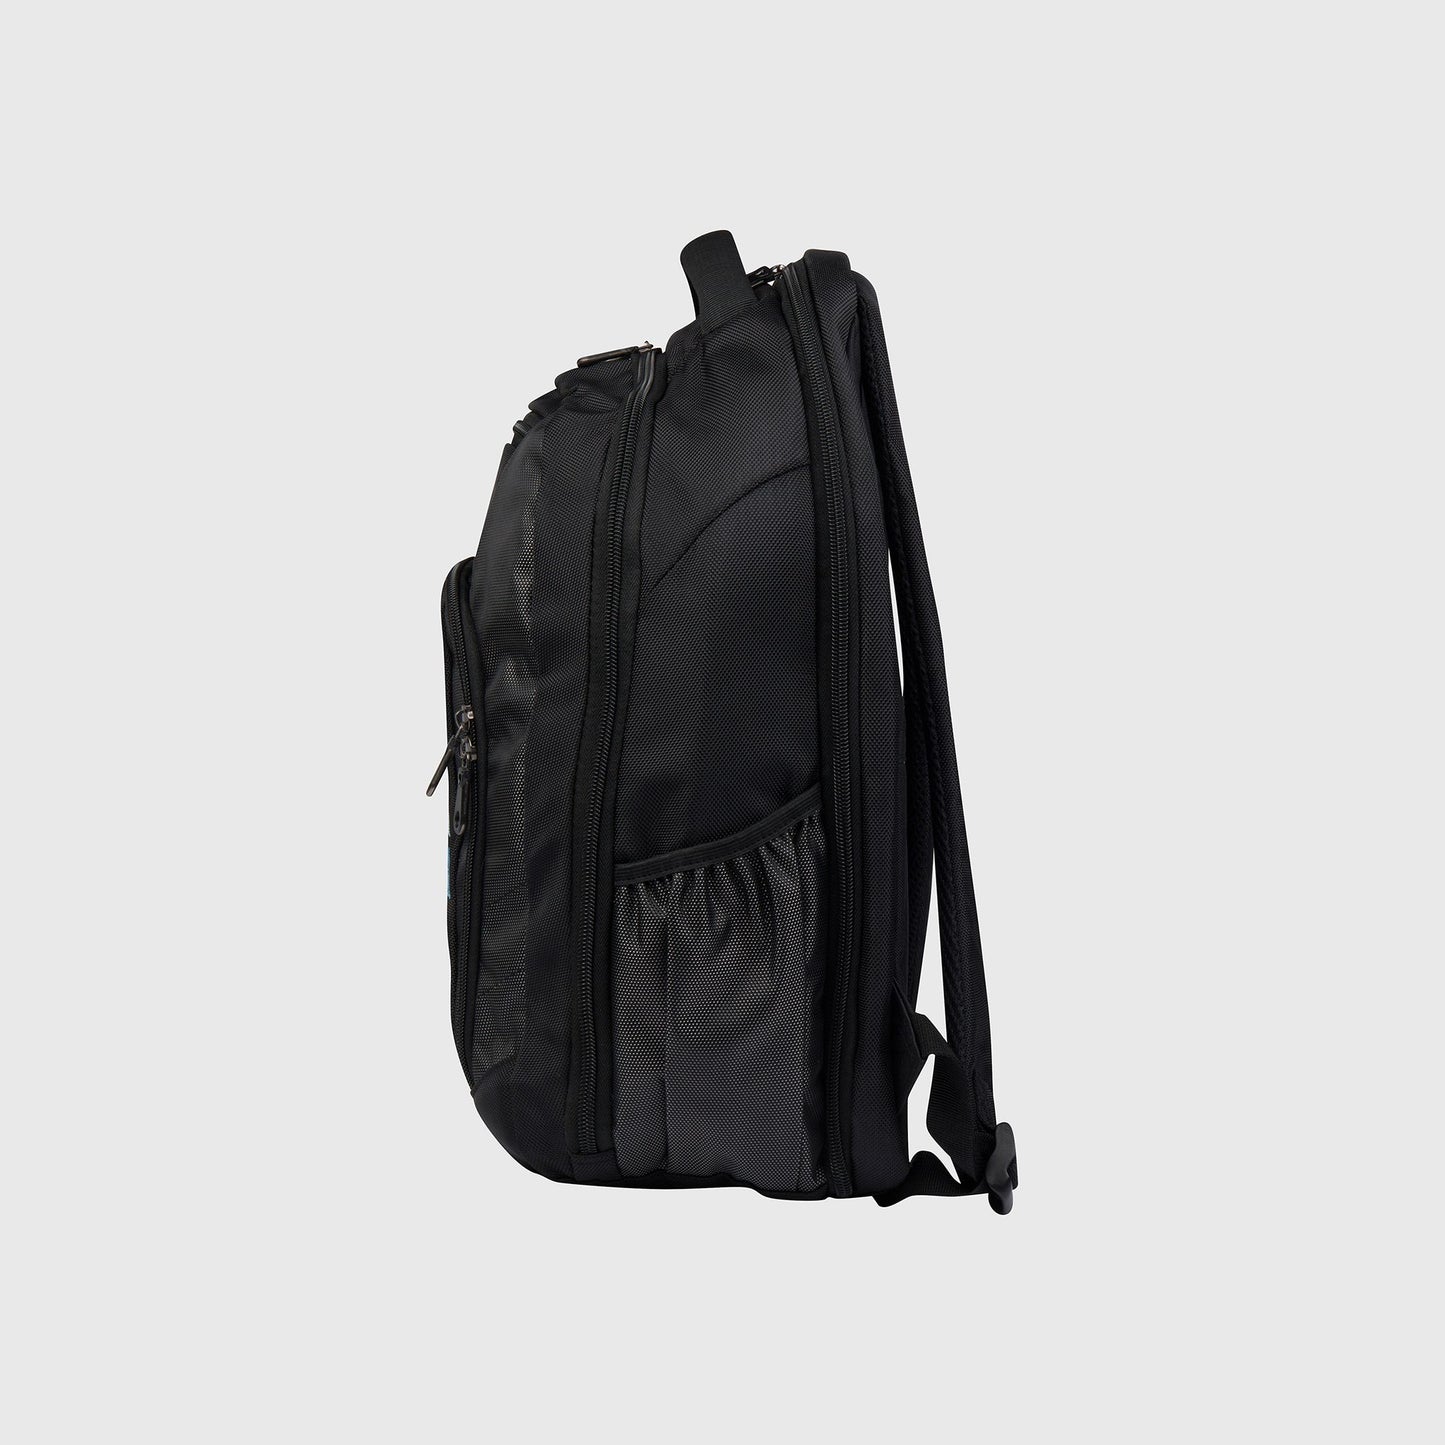 SAXA Backpack